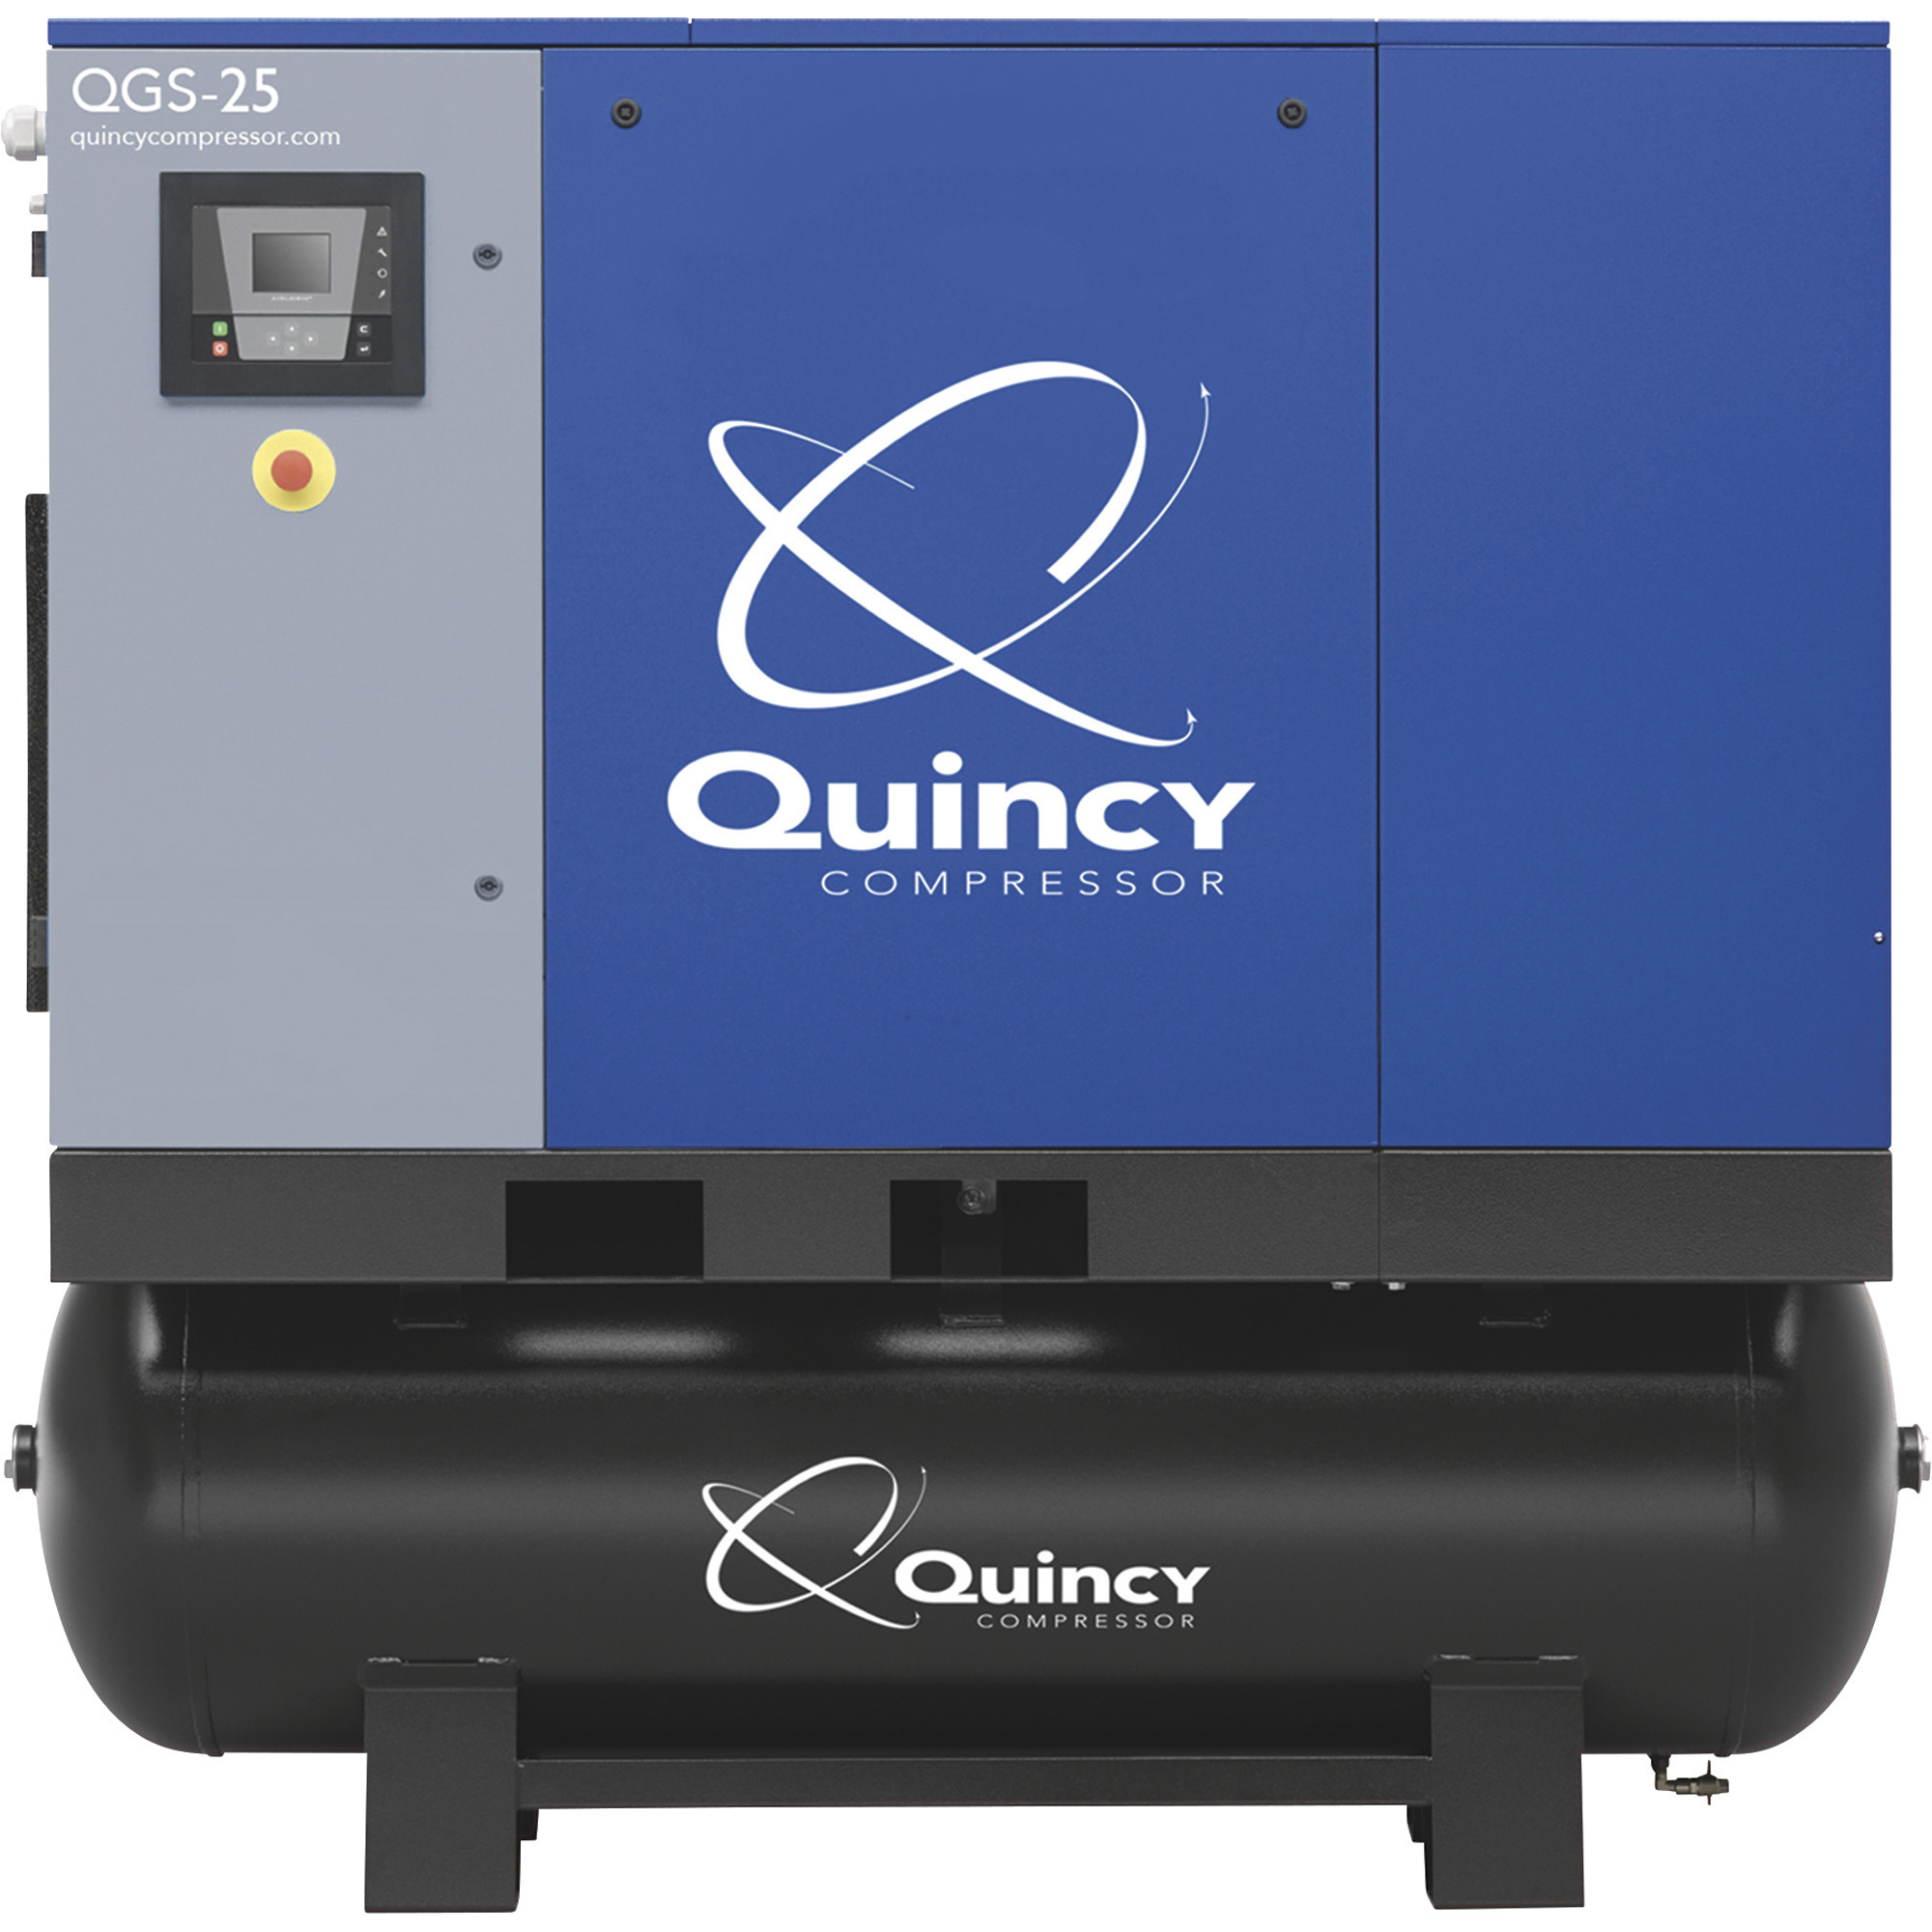 Quincy Compressor 4152026545